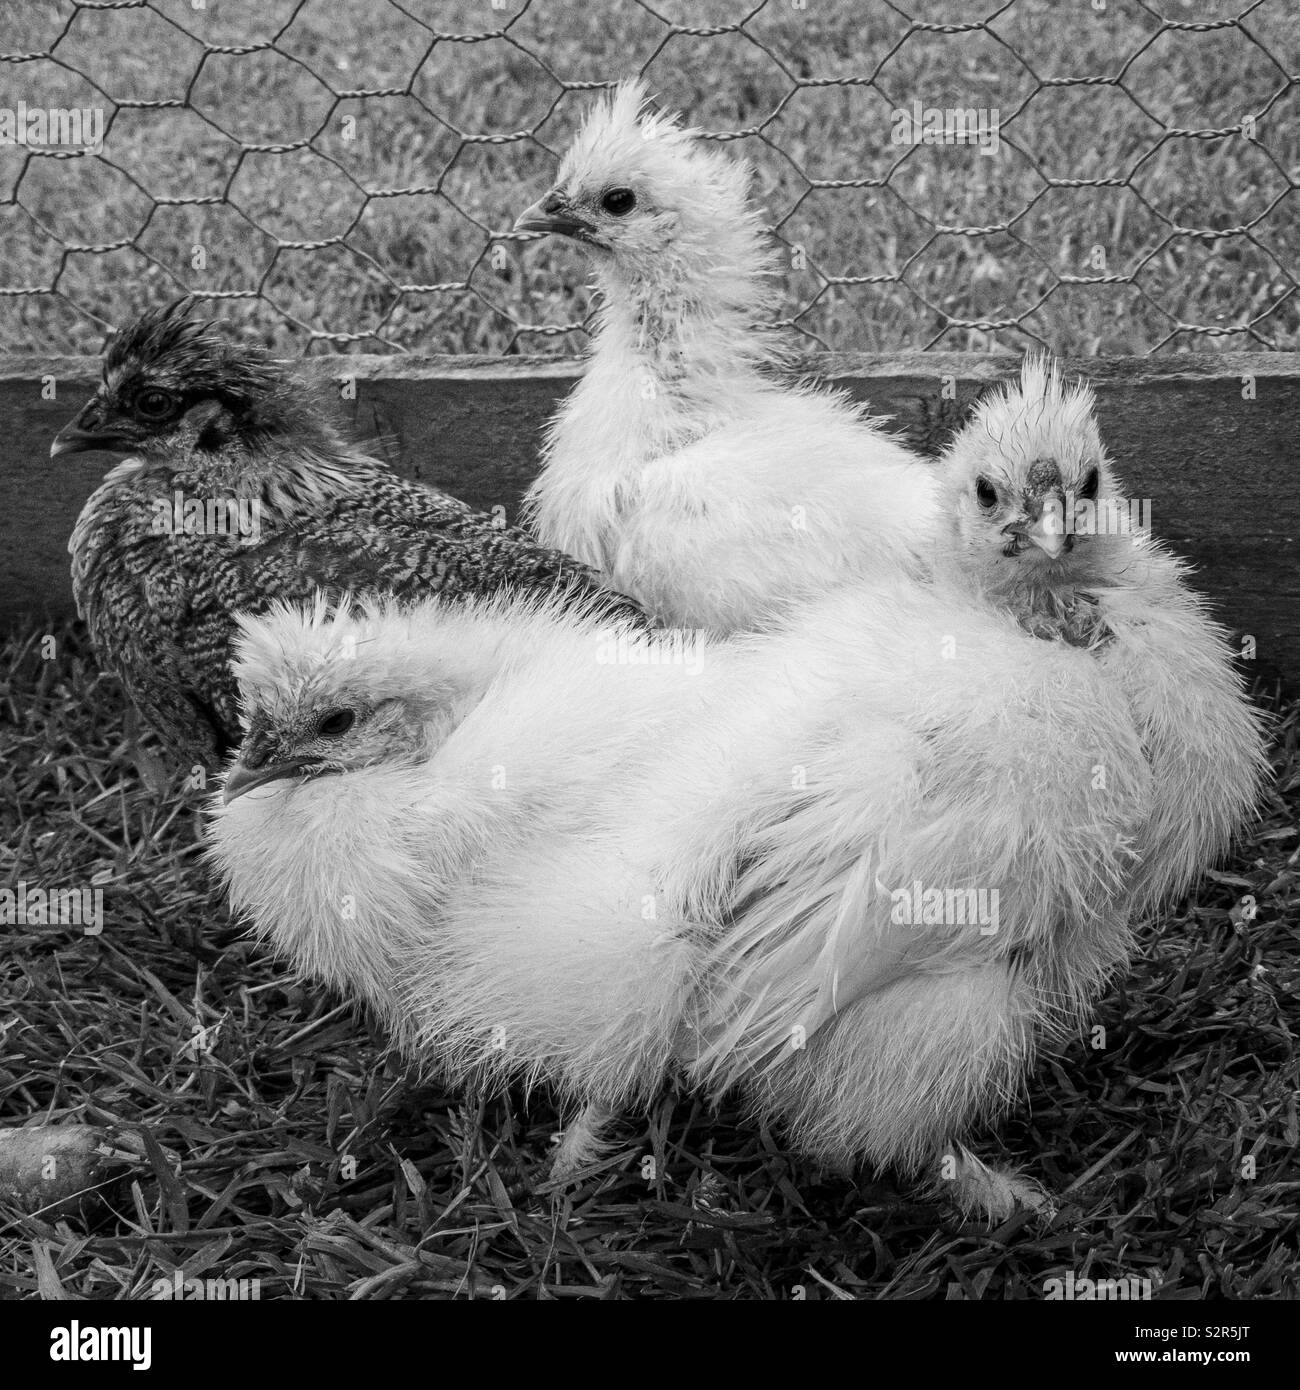 Silkie chicks on grass in chicken run Stock Photo